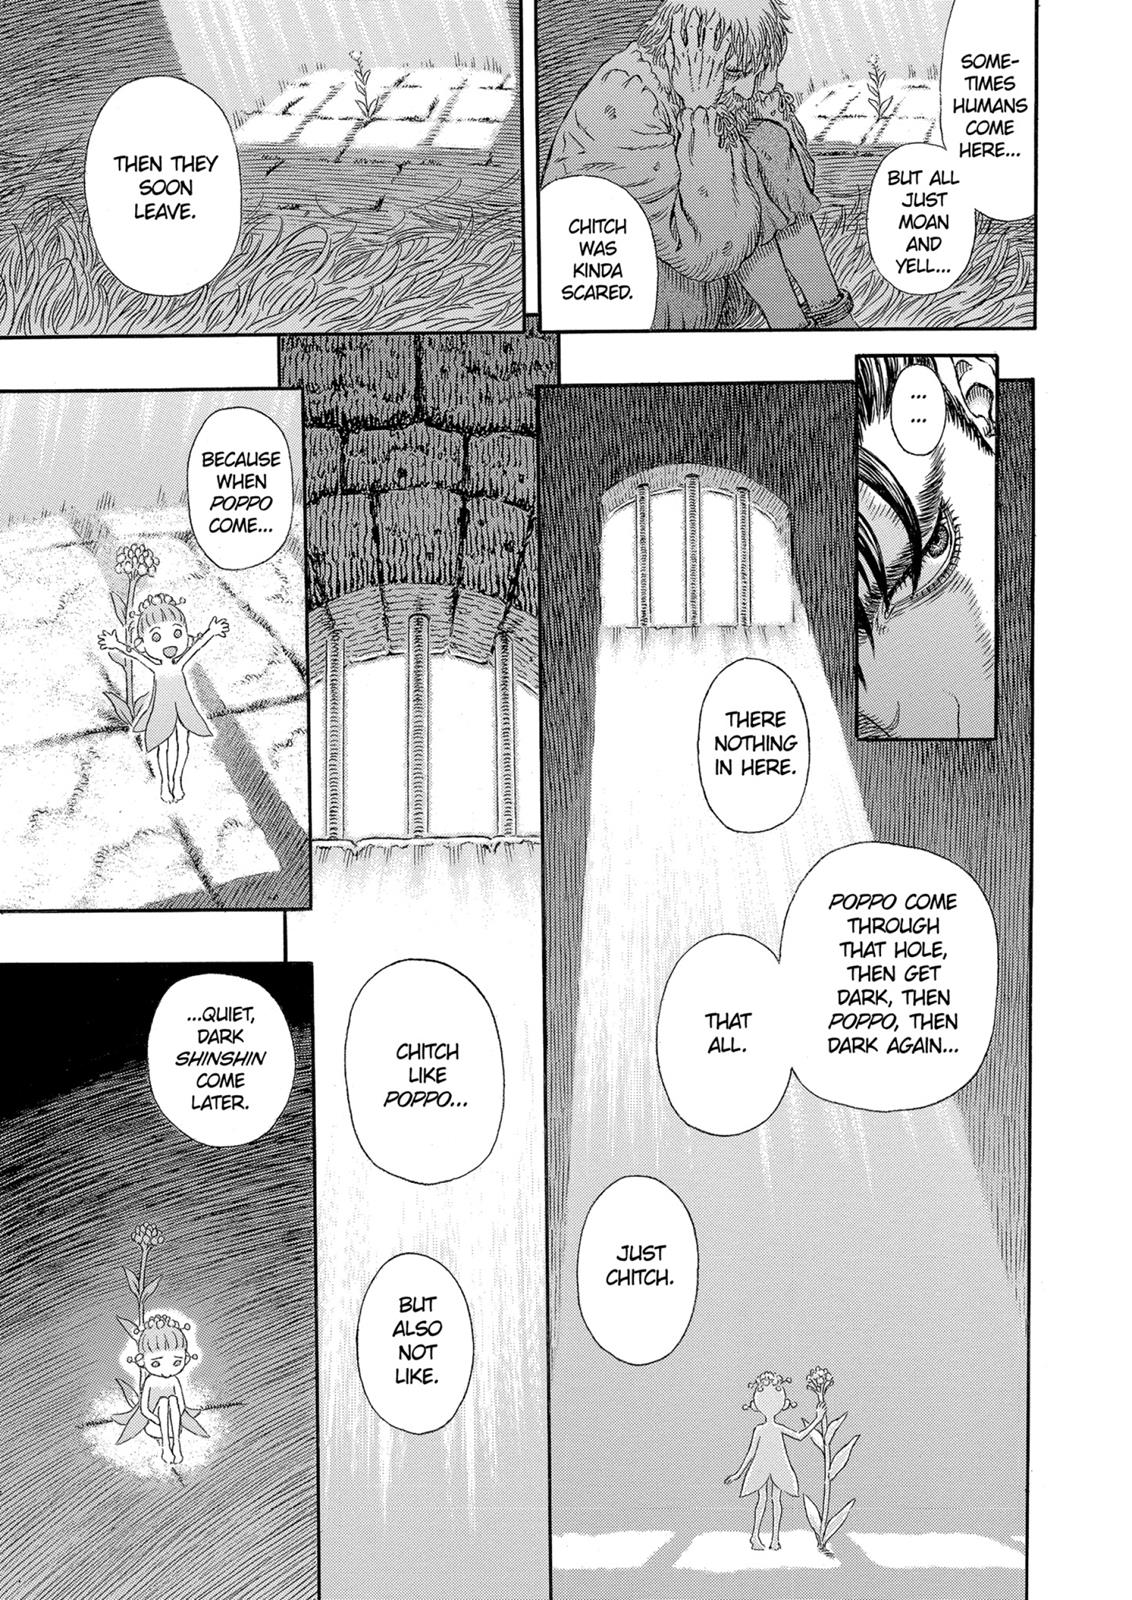 Berserk Manga Chapter 330 image 14